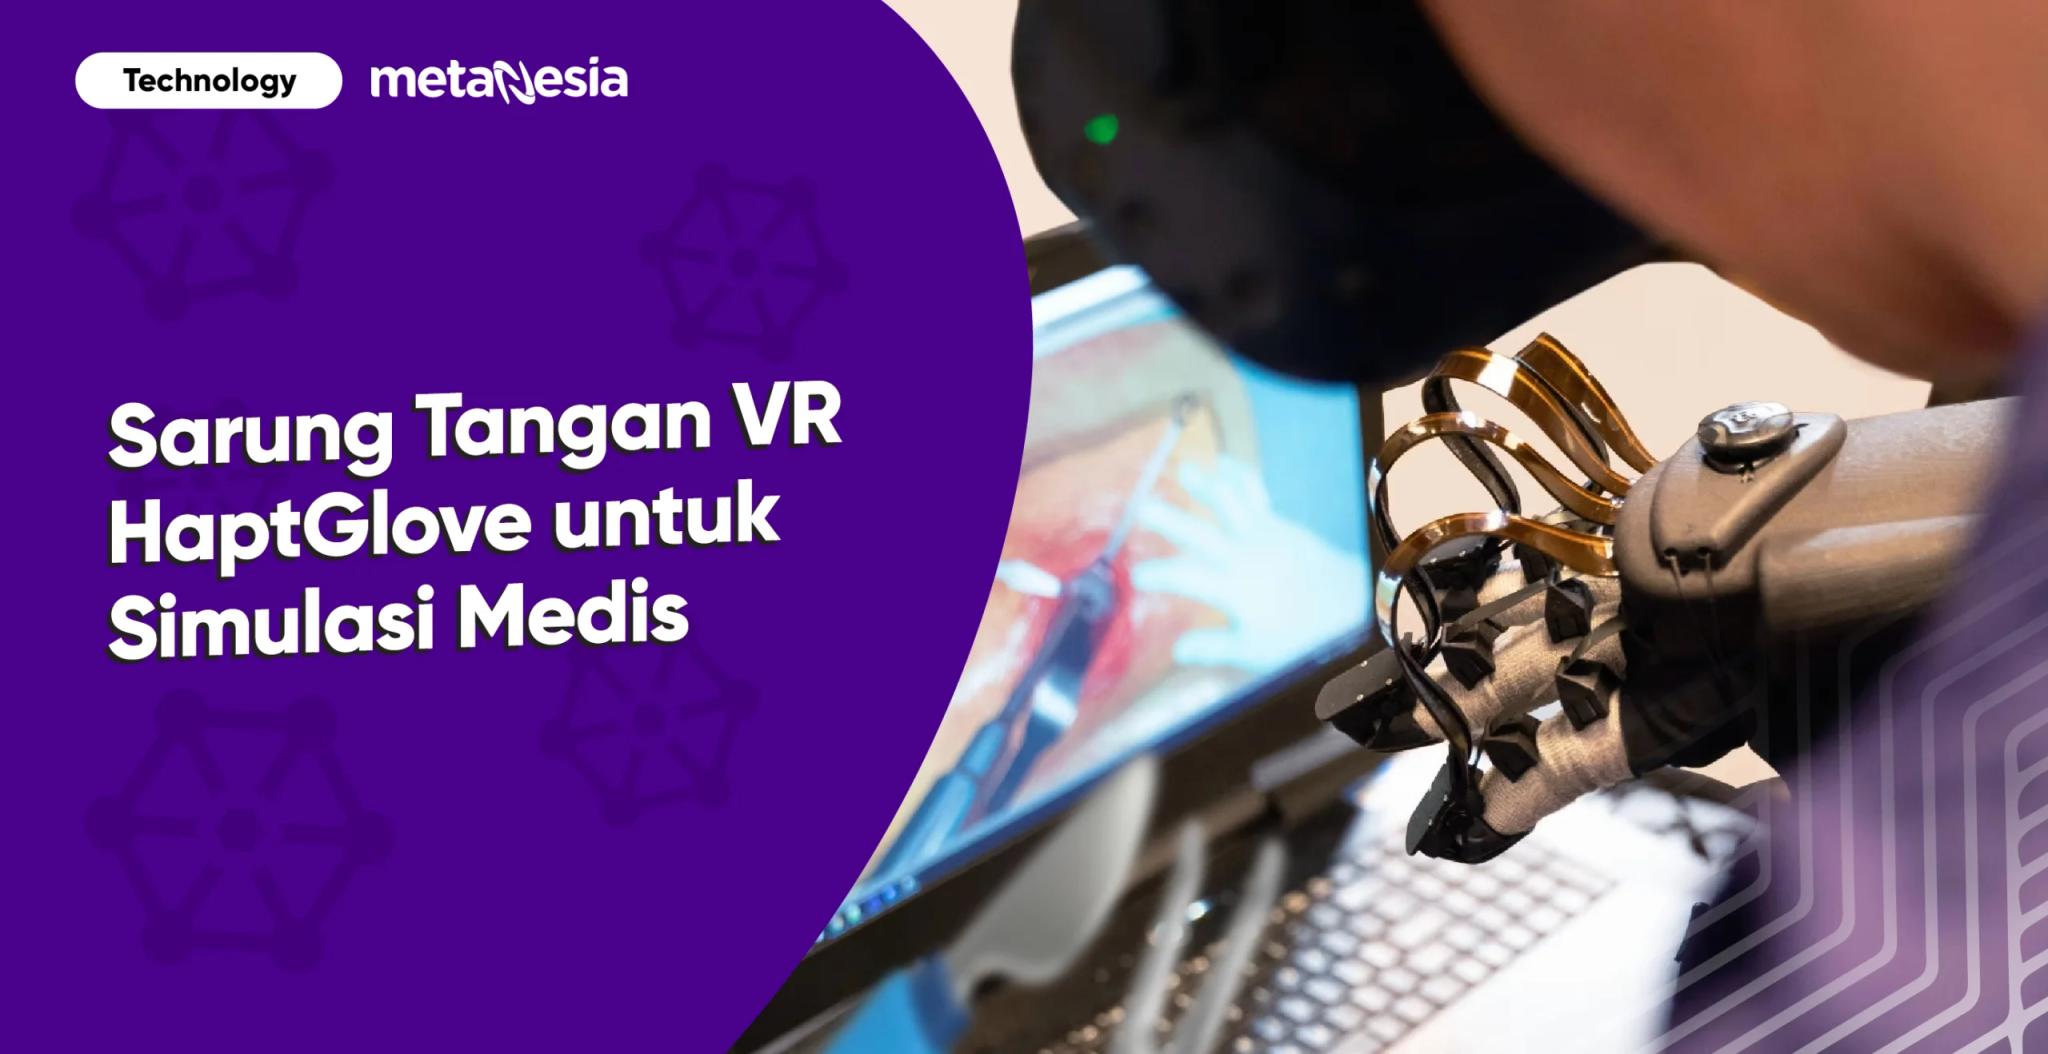 Peneliti National University of Singapore Membuat Sarung Tangan VR HaptGlove untuk Simulasi Operasi